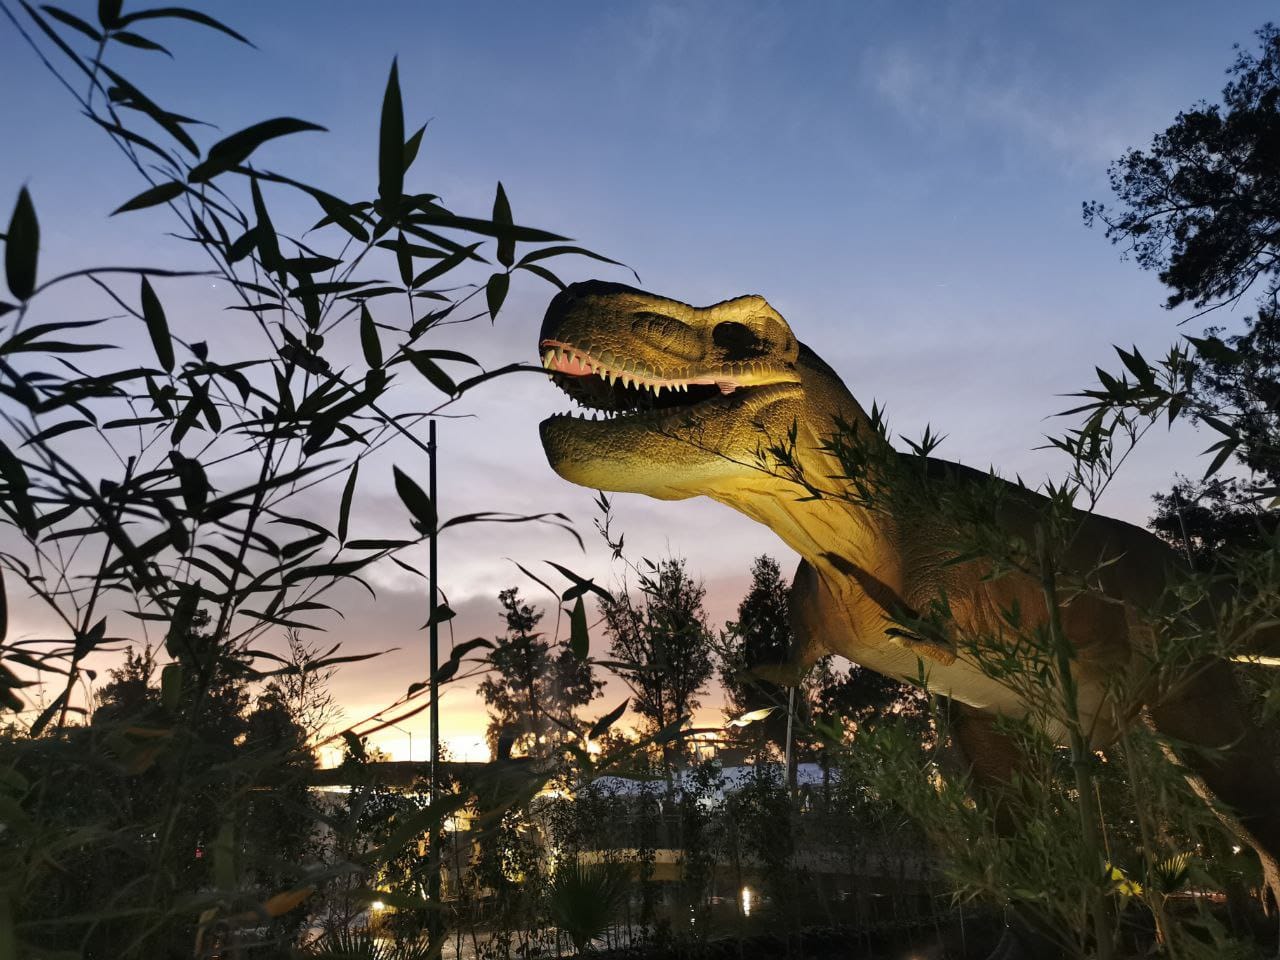 Dinosaurios “invaden” CDMX: así es Iztapasauria, el nuevo parque jurásico  en Iztapalapa - Infobae